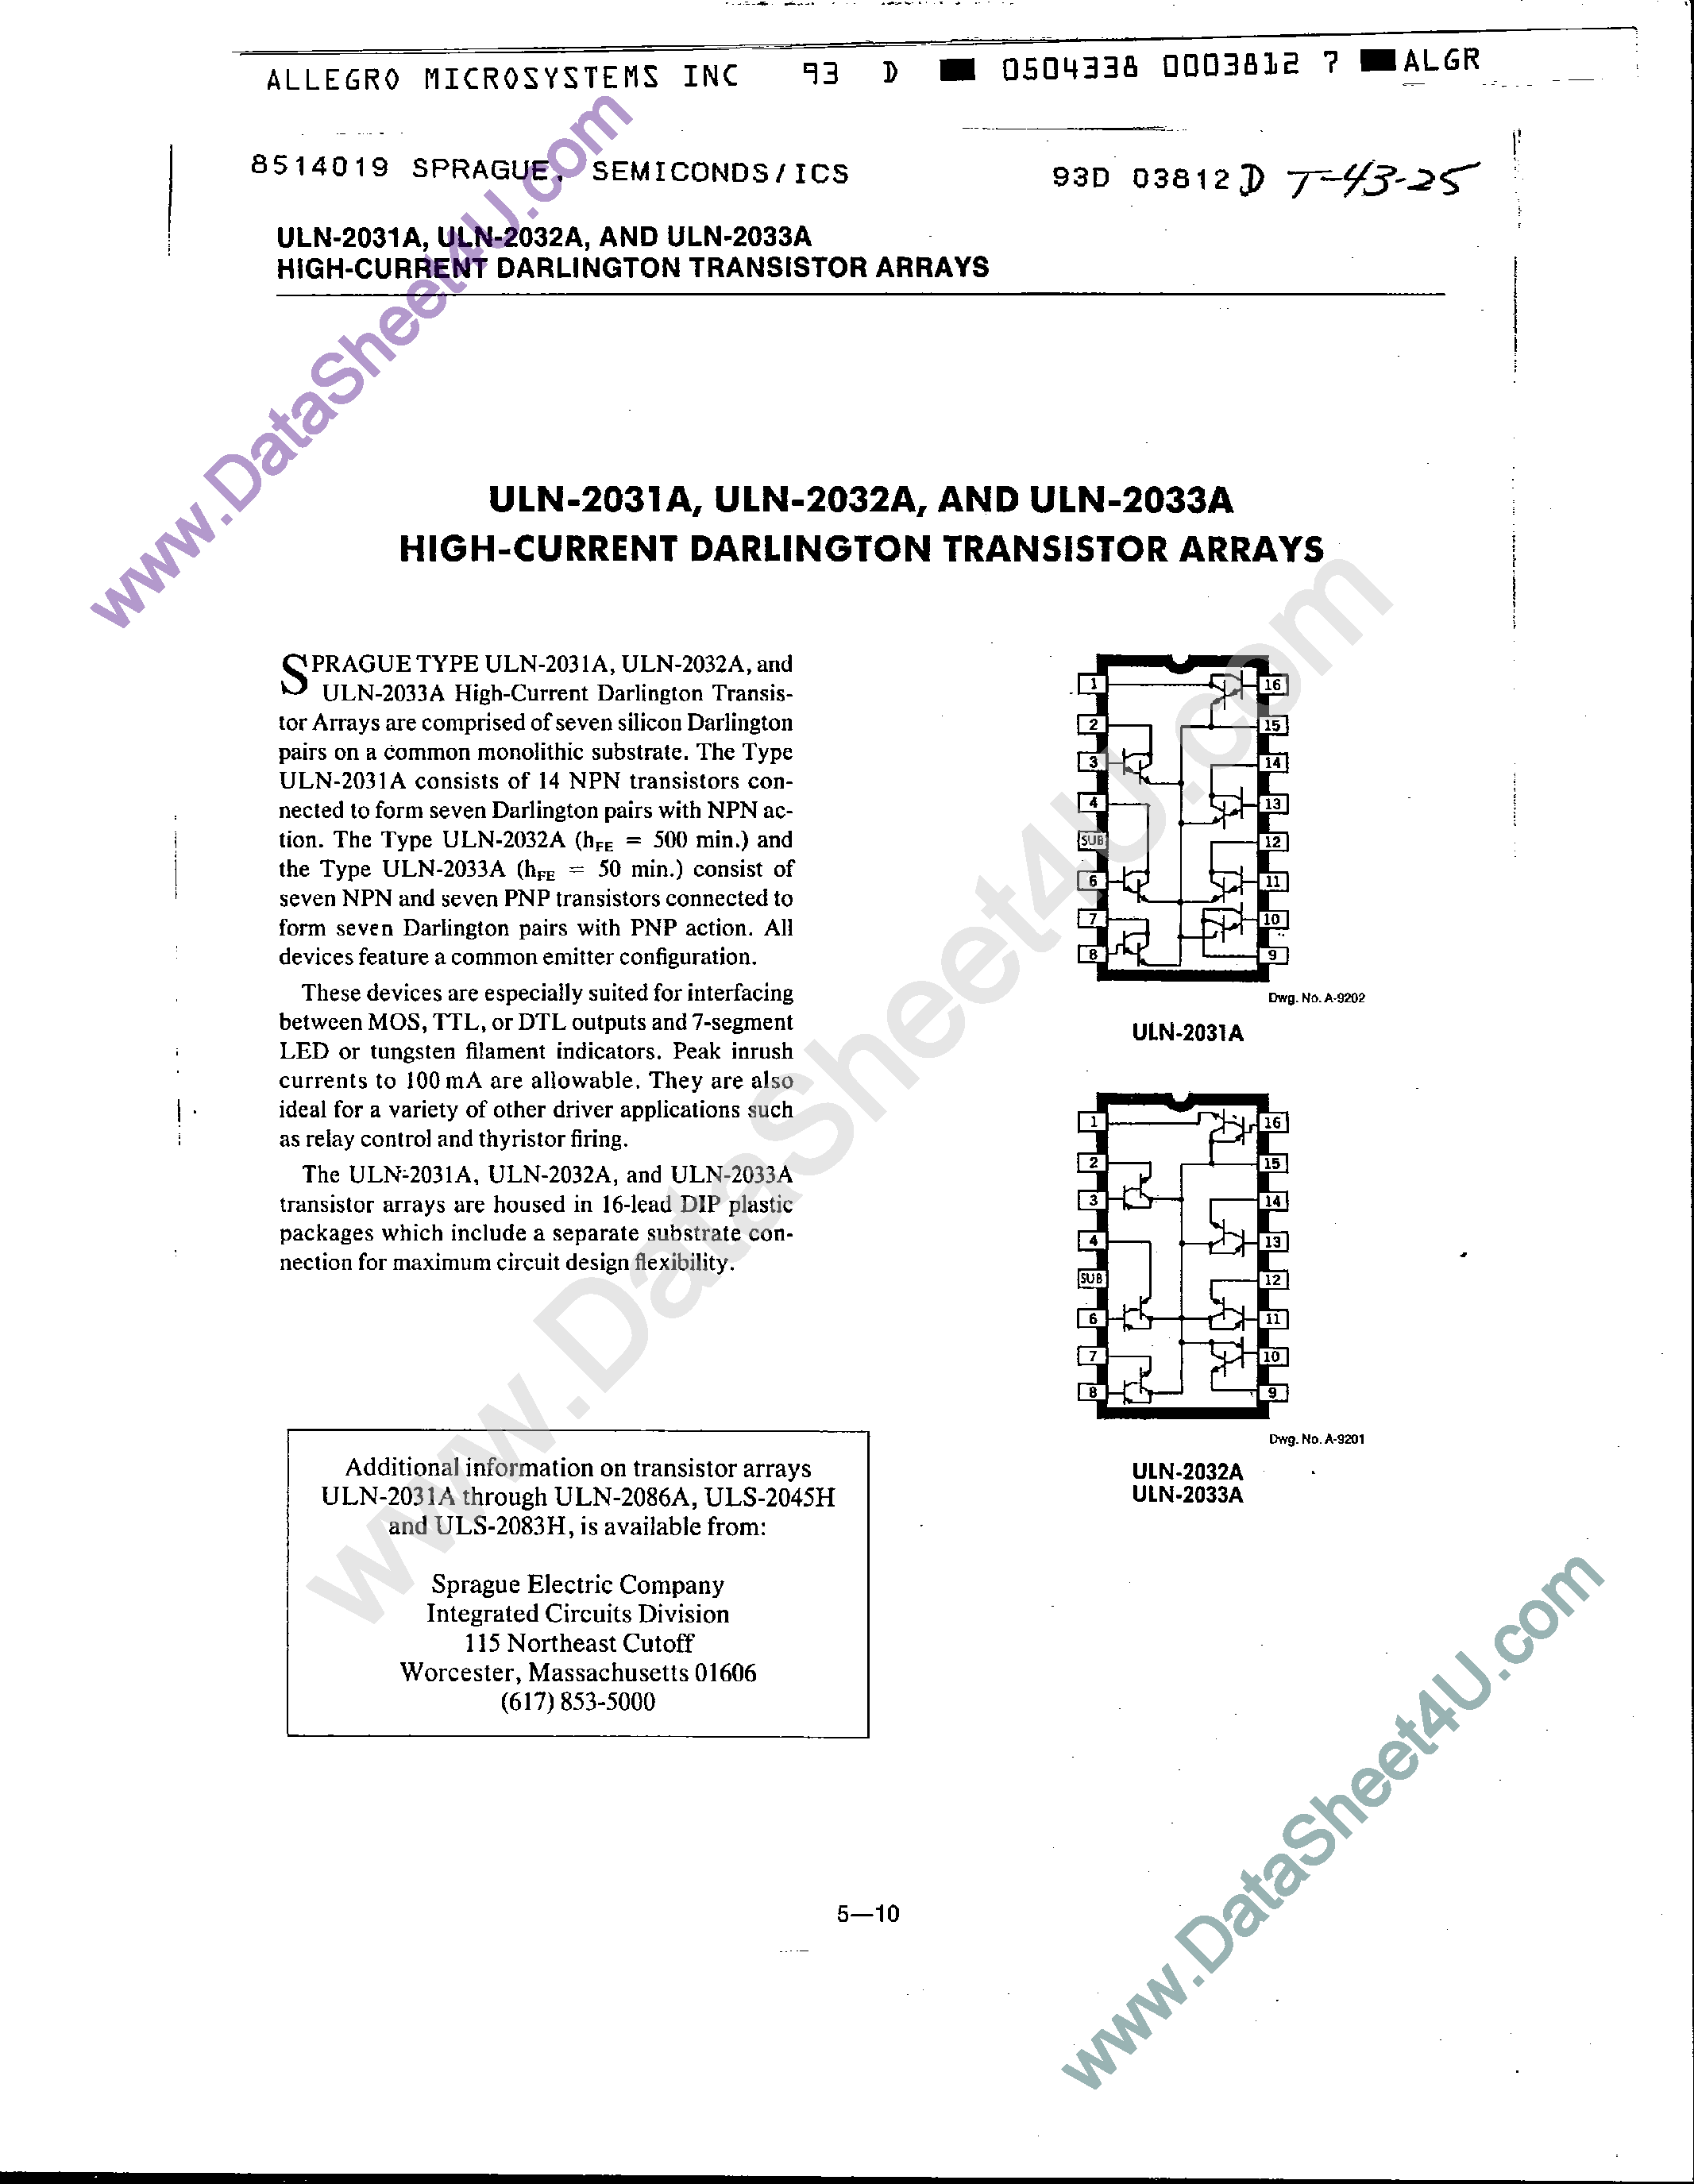 Даташит ULN-2031A - (ULN2031A - ULN2033A) High Current Darlington Transistor Arrays страница 1